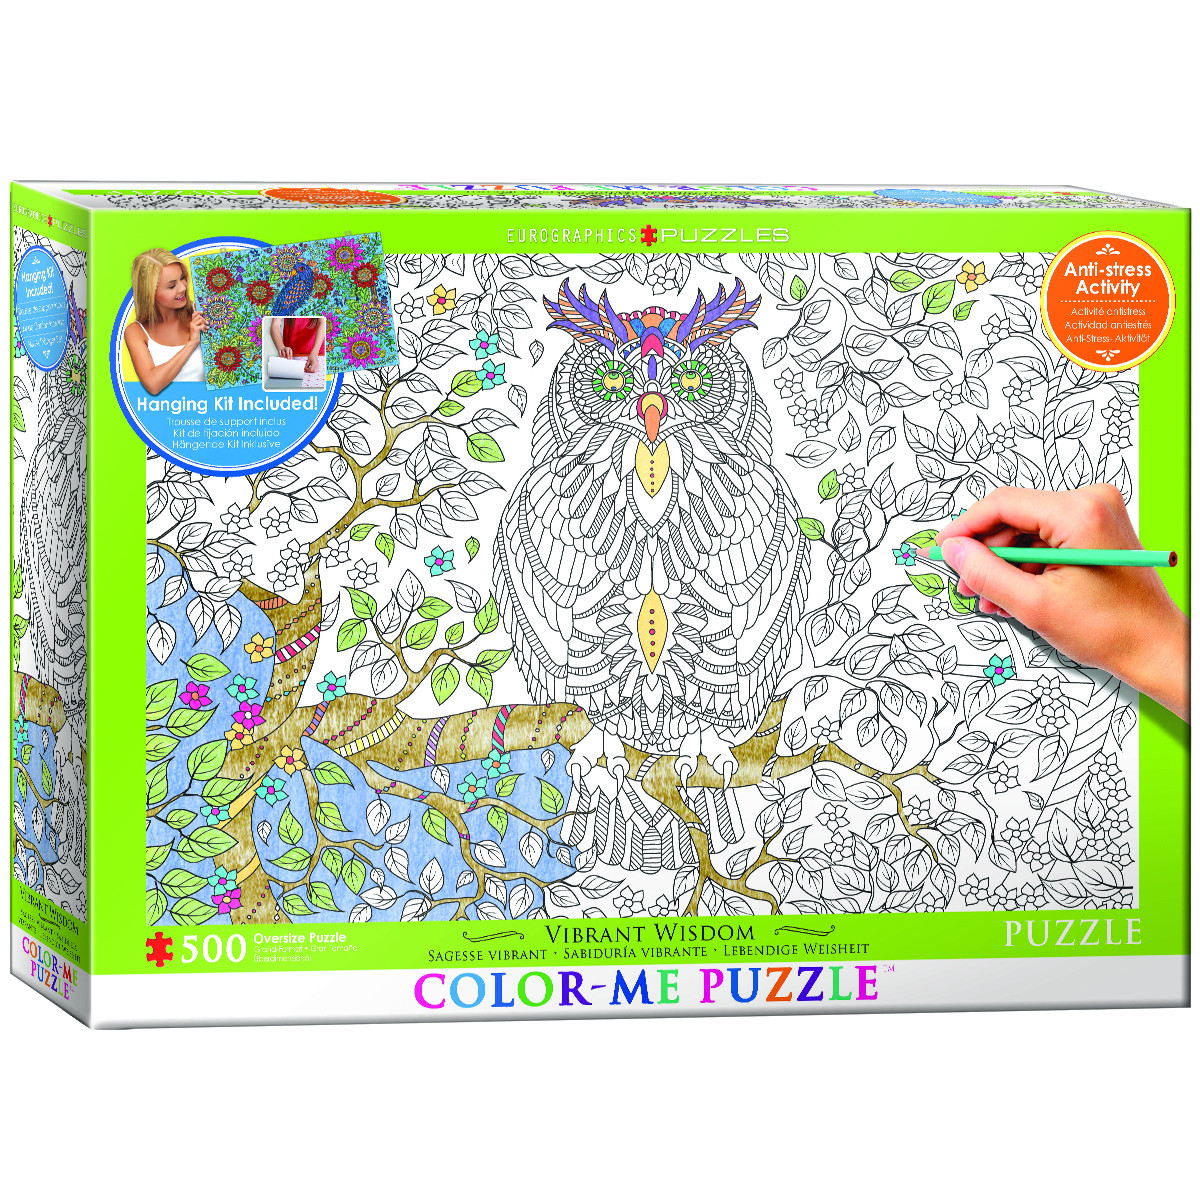 Vibrant Wisdom (Color-Me Puzzle) Birds Jigsaw Puzzle